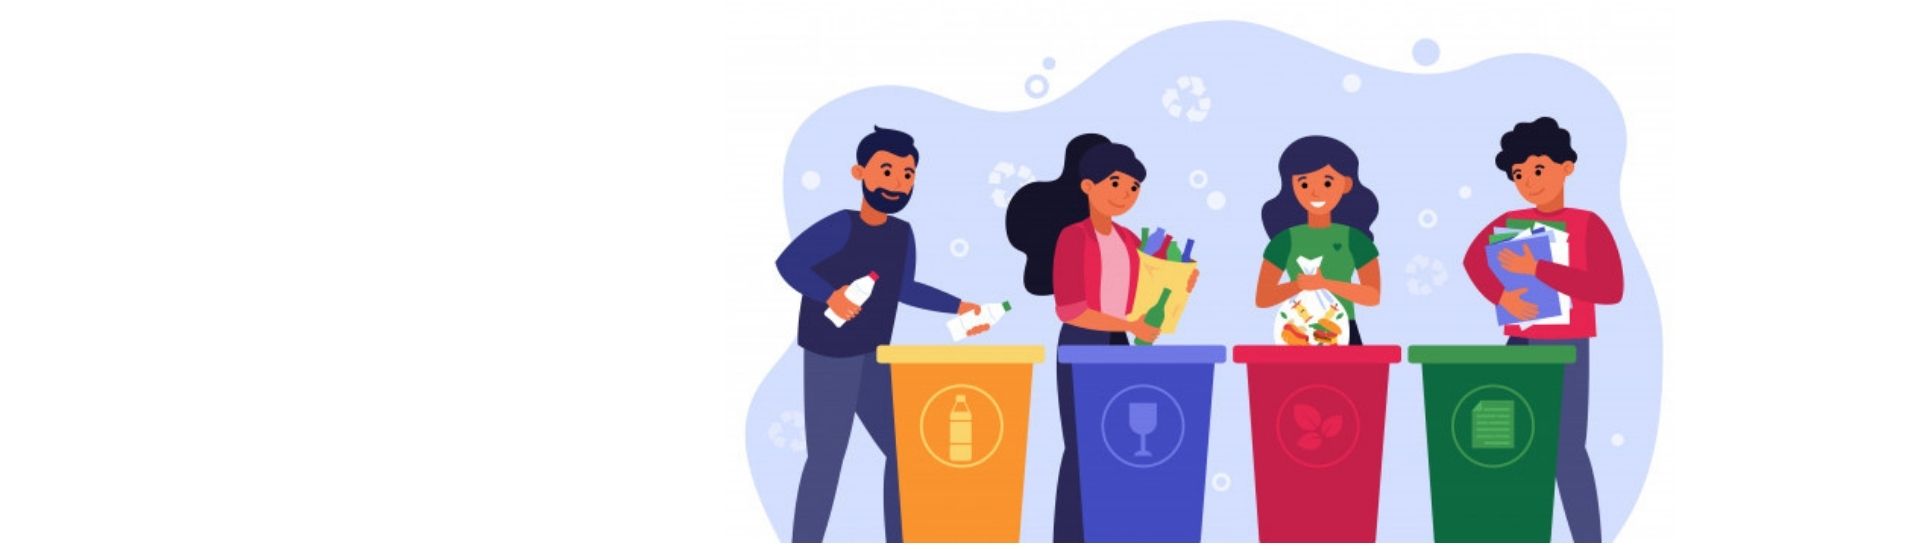 En la imagen se ven cuatro personas reciclando y aprendiendo a separar residuos